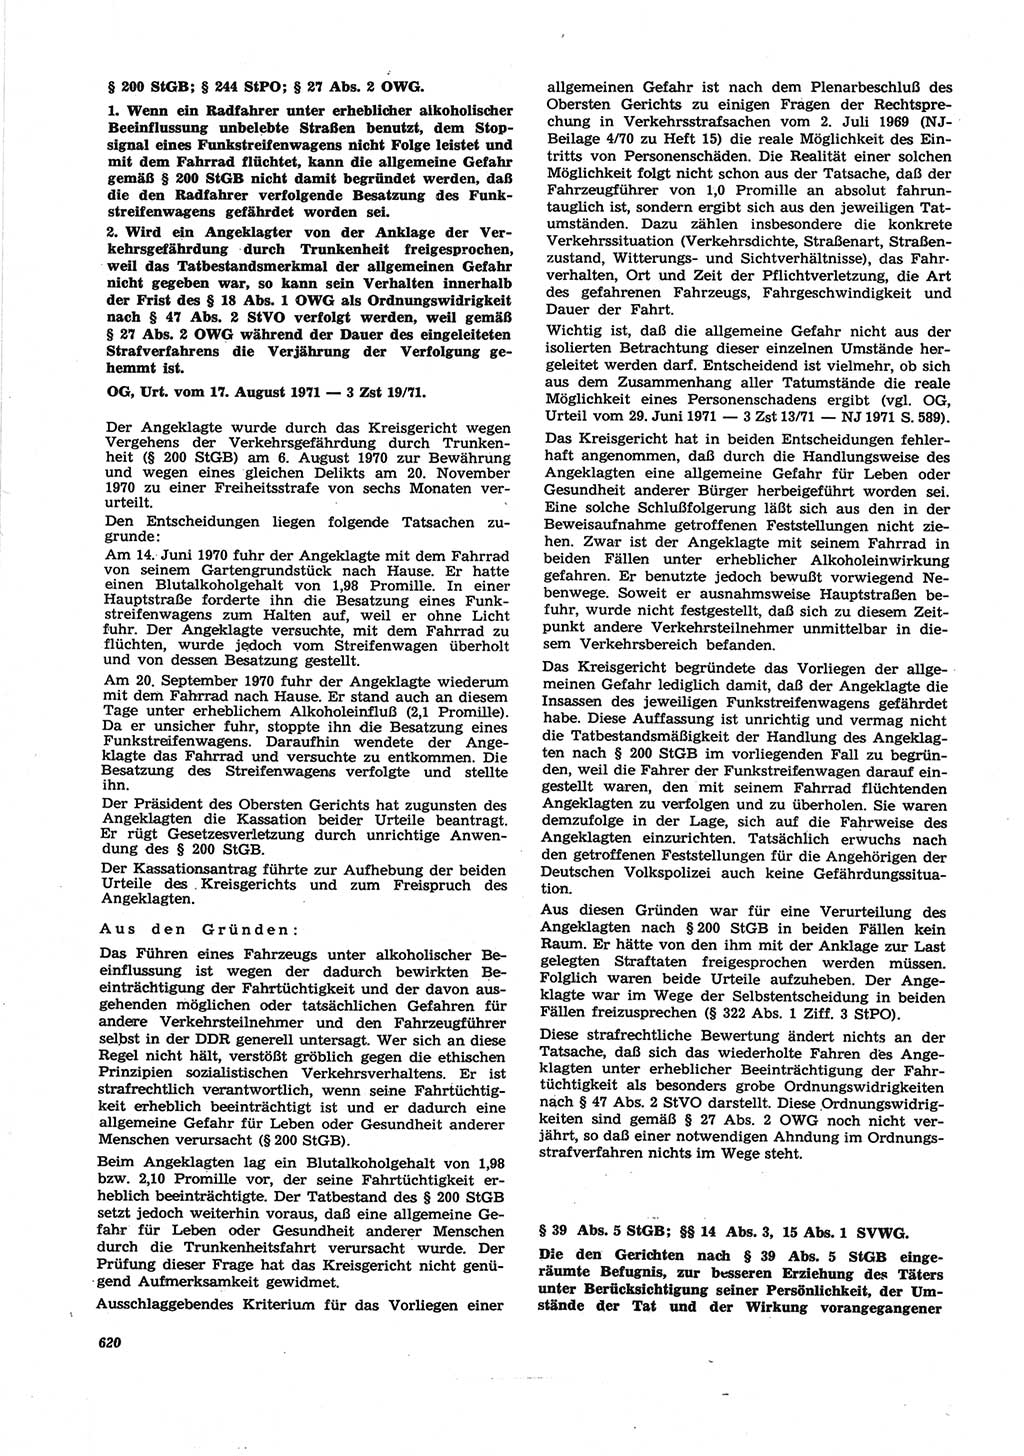 Neue Justiz (NJ), Zeitschrift für Recht und Rechtswissenschaft [Deutsche Demokratische Republik (DDR)], 25. Jahrgang 1971, Seite 620 (NJ DDR 1971, S. 620)